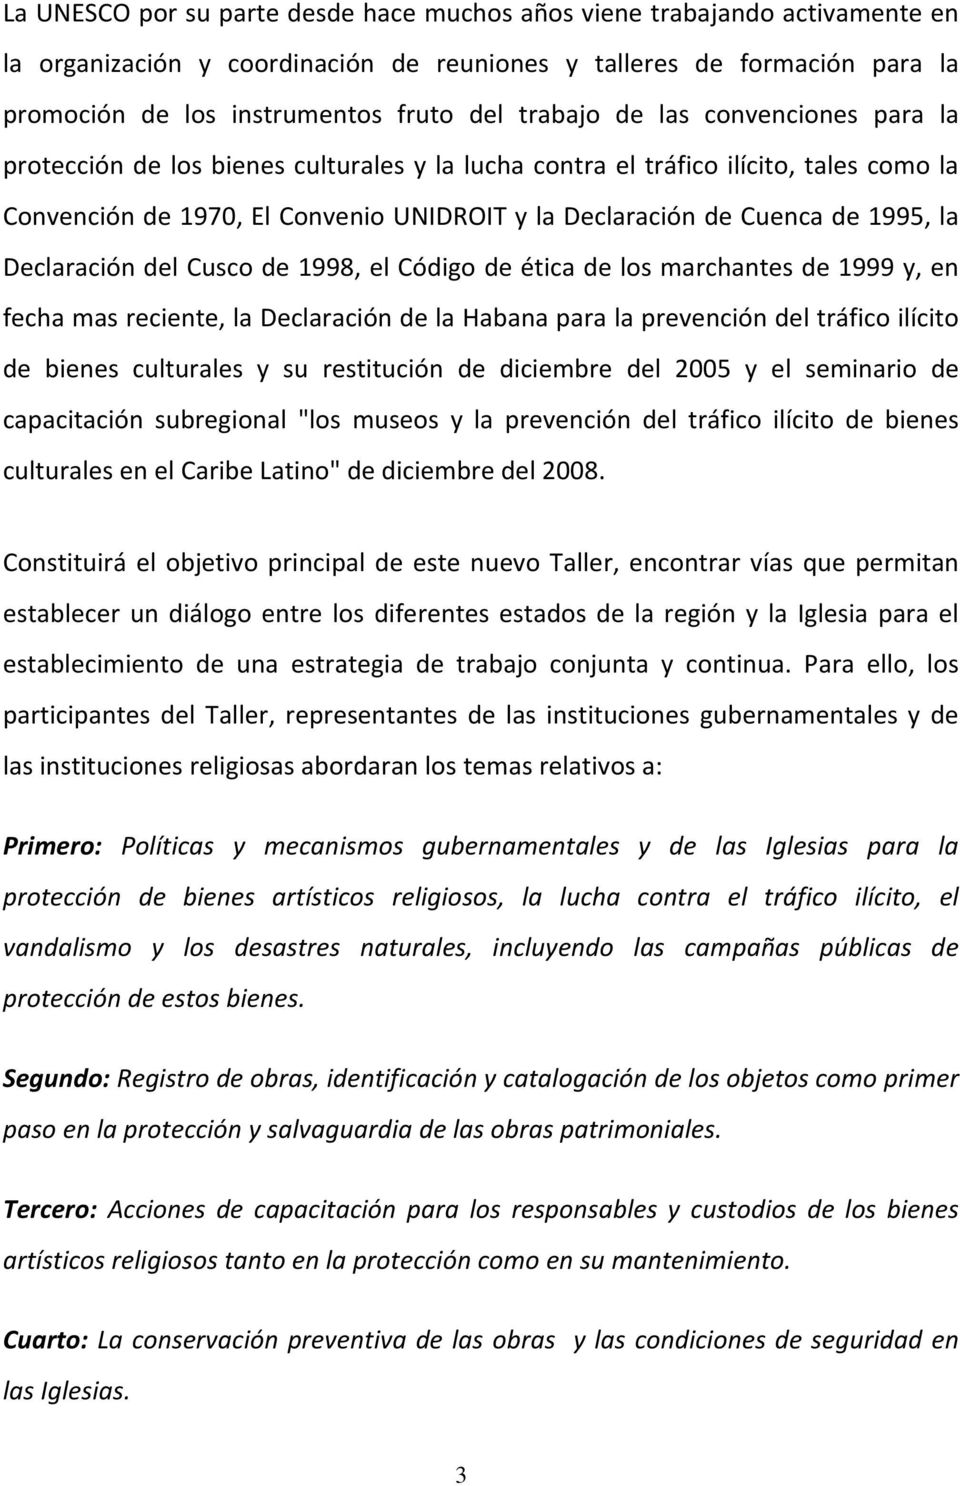 1995, la Declaración del Cusco de 1998, el Código de ética de los marchantes de 1999 y, en fecha mas reciente, la Declaración de la Habana para la prevención del tráfico ilícito de bienes culturales